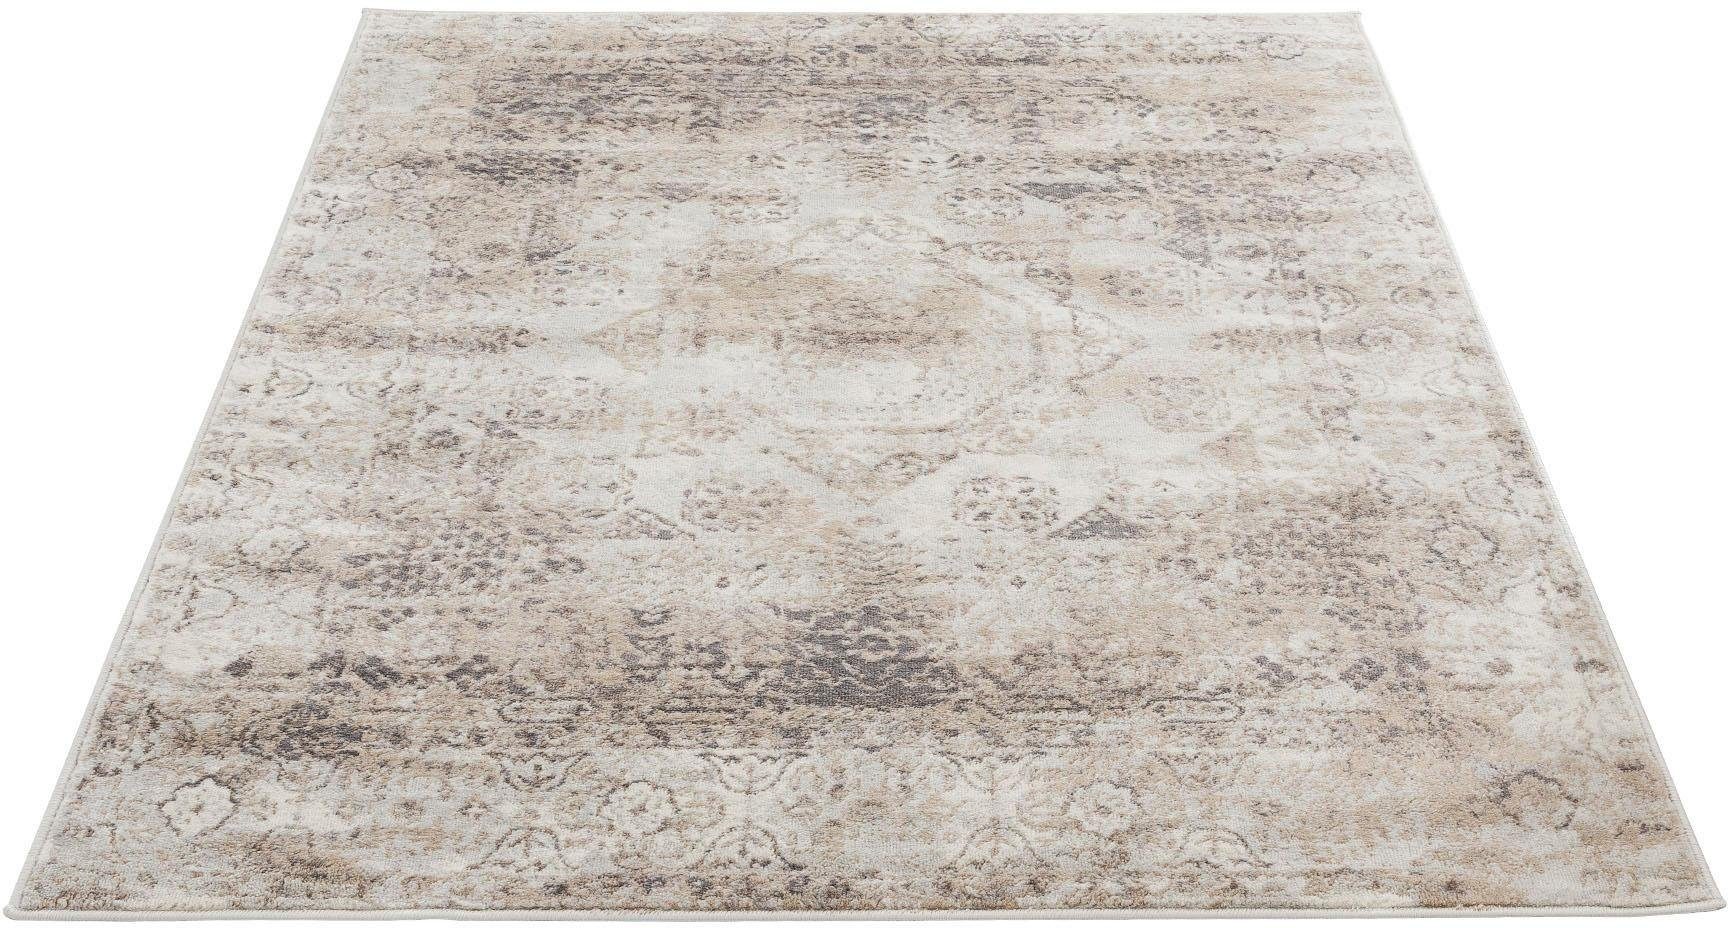 SEHRAZAT Vloerkleed- modern laagpolig vloerkleed bruin geodriehoek patroon, 80x150 cm